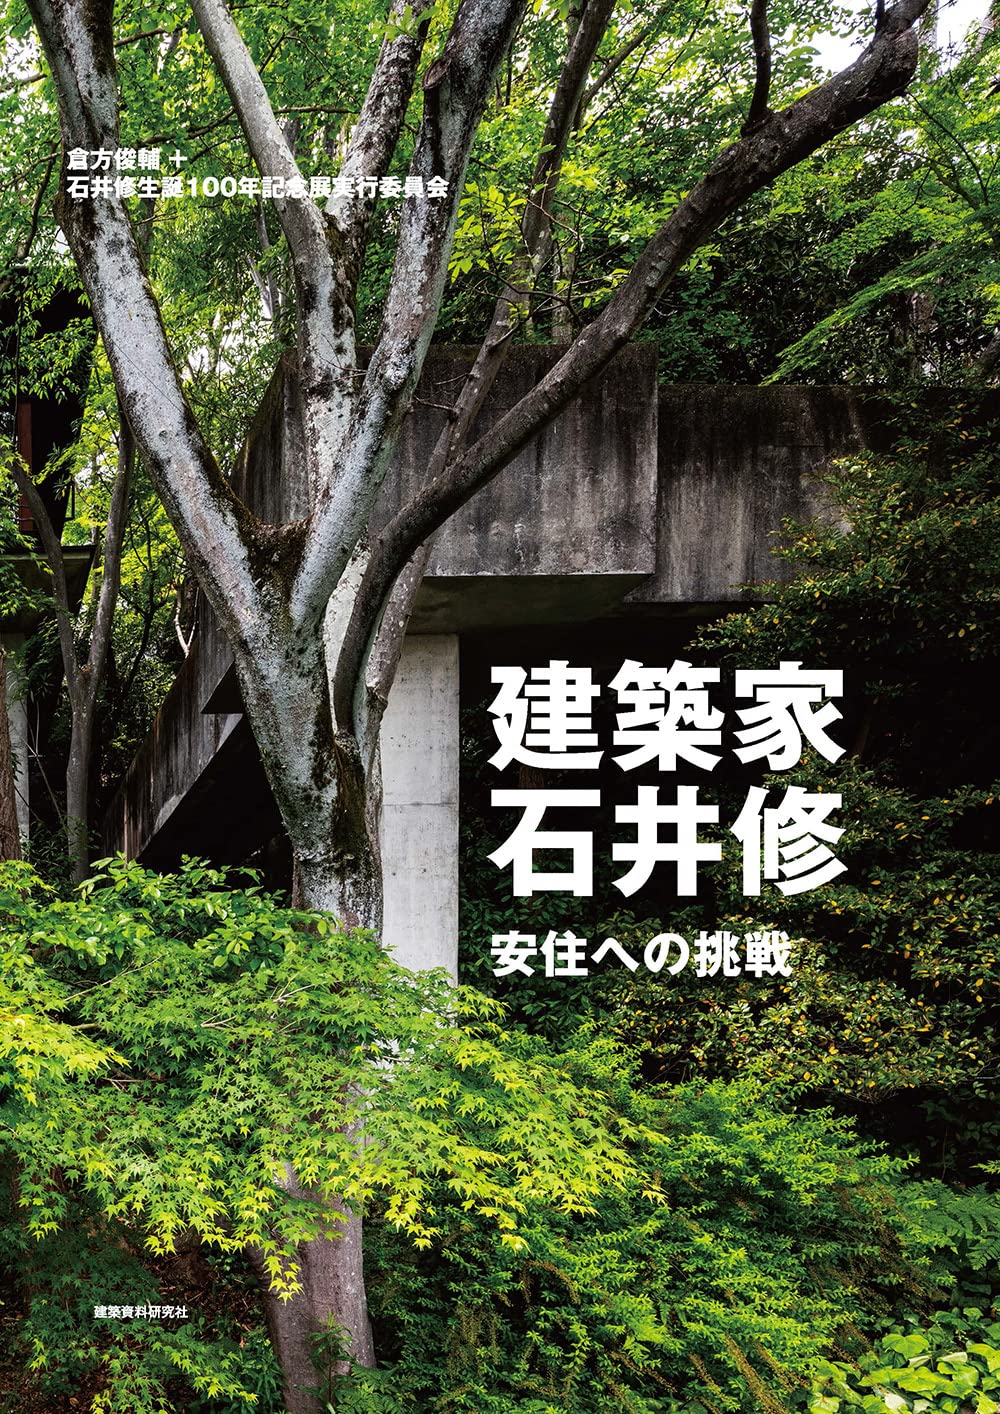 「緑の建築家」 “石井修”と、今、出会う/『建築家・石井修 安住への挑戦』